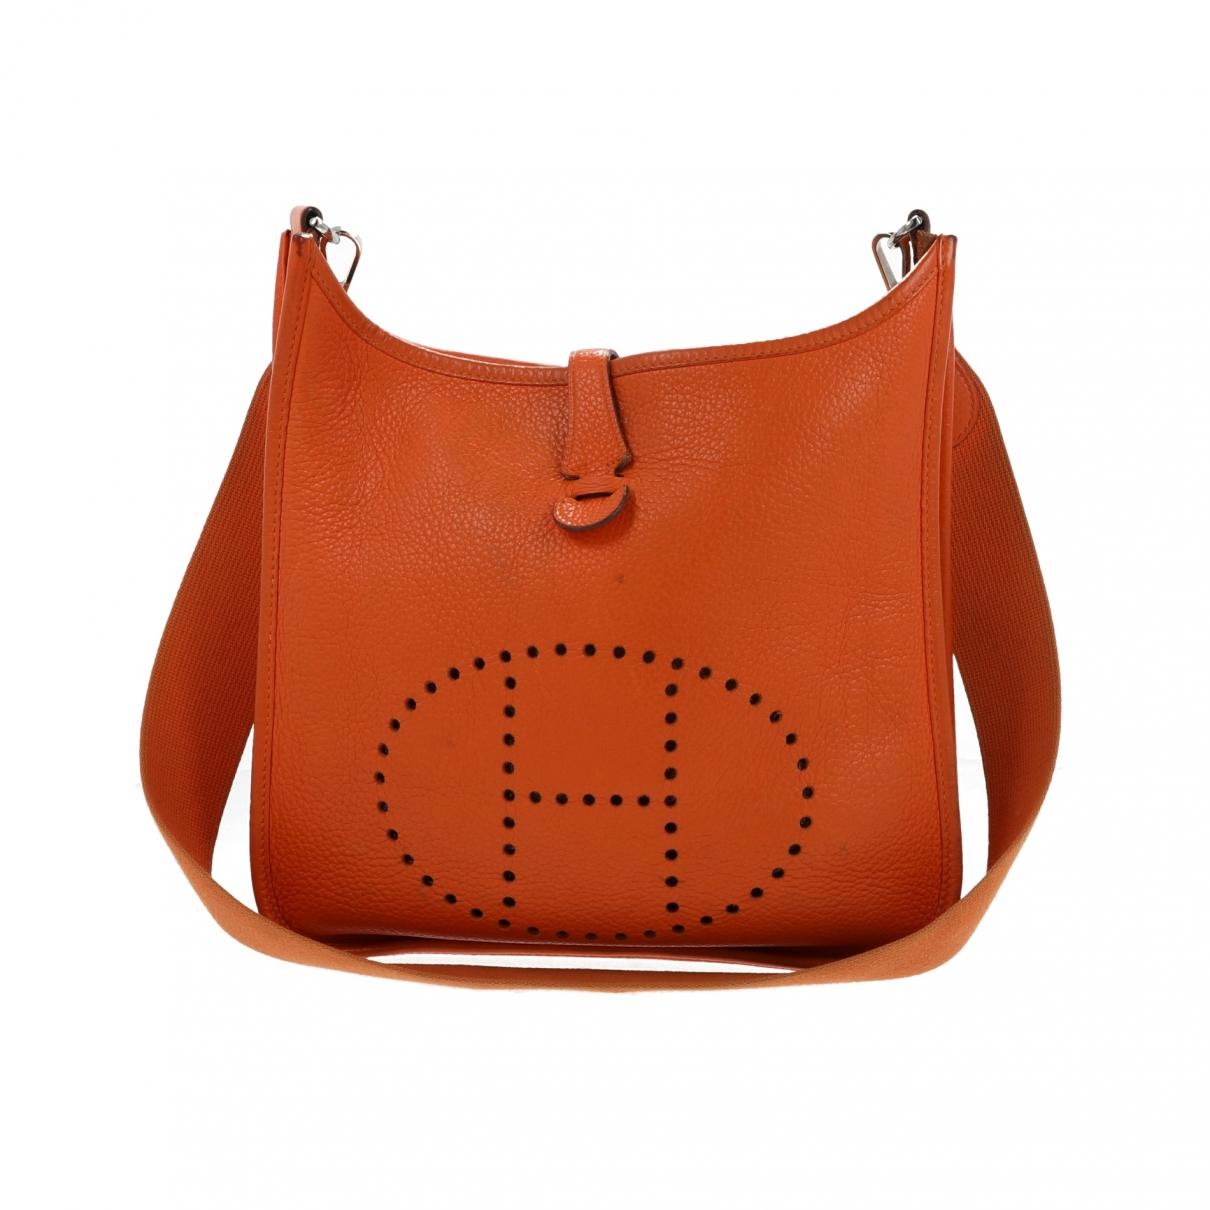 Hermes Evelyne Handbag Price Guide | semashow.com